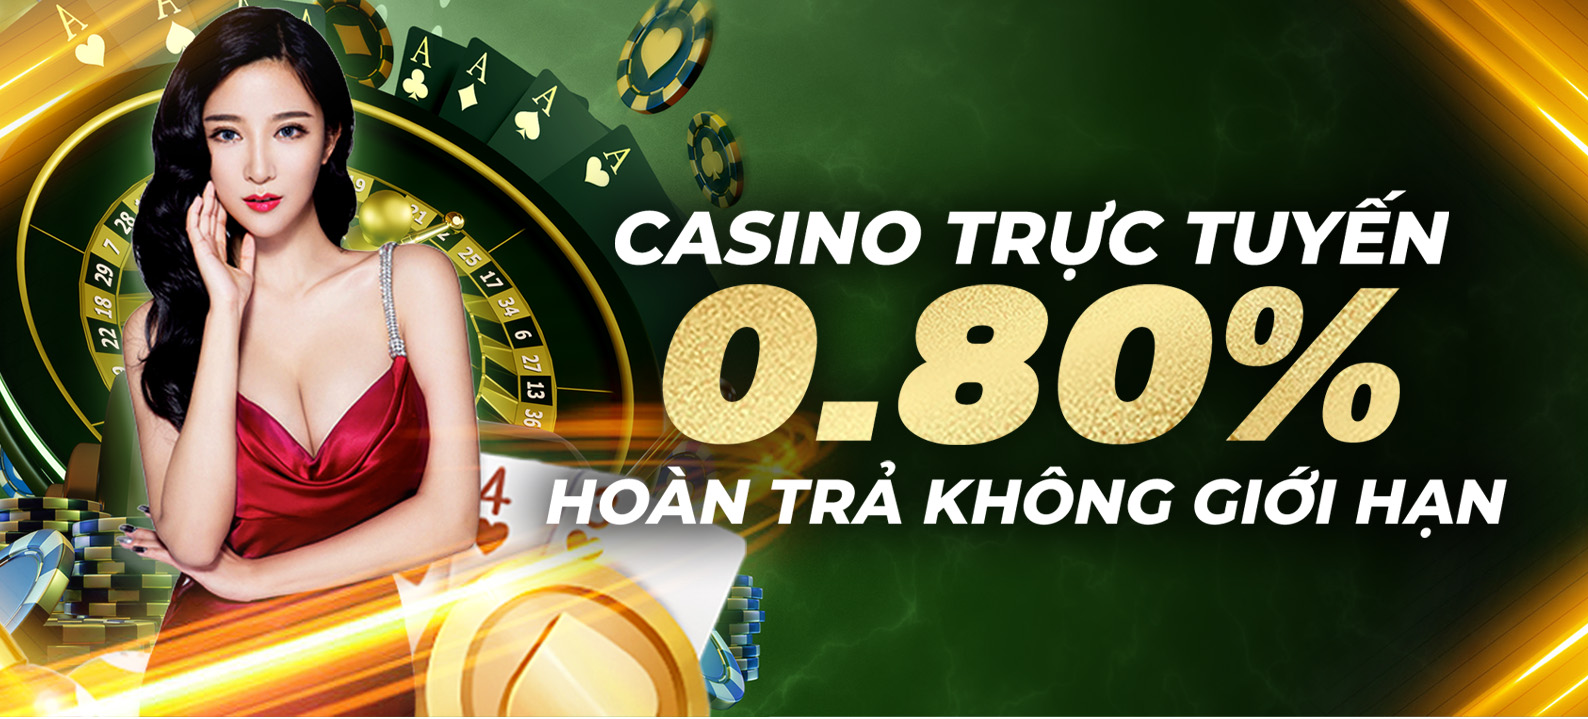 Hoàn trả không giới hạn 0.80% tại Casino